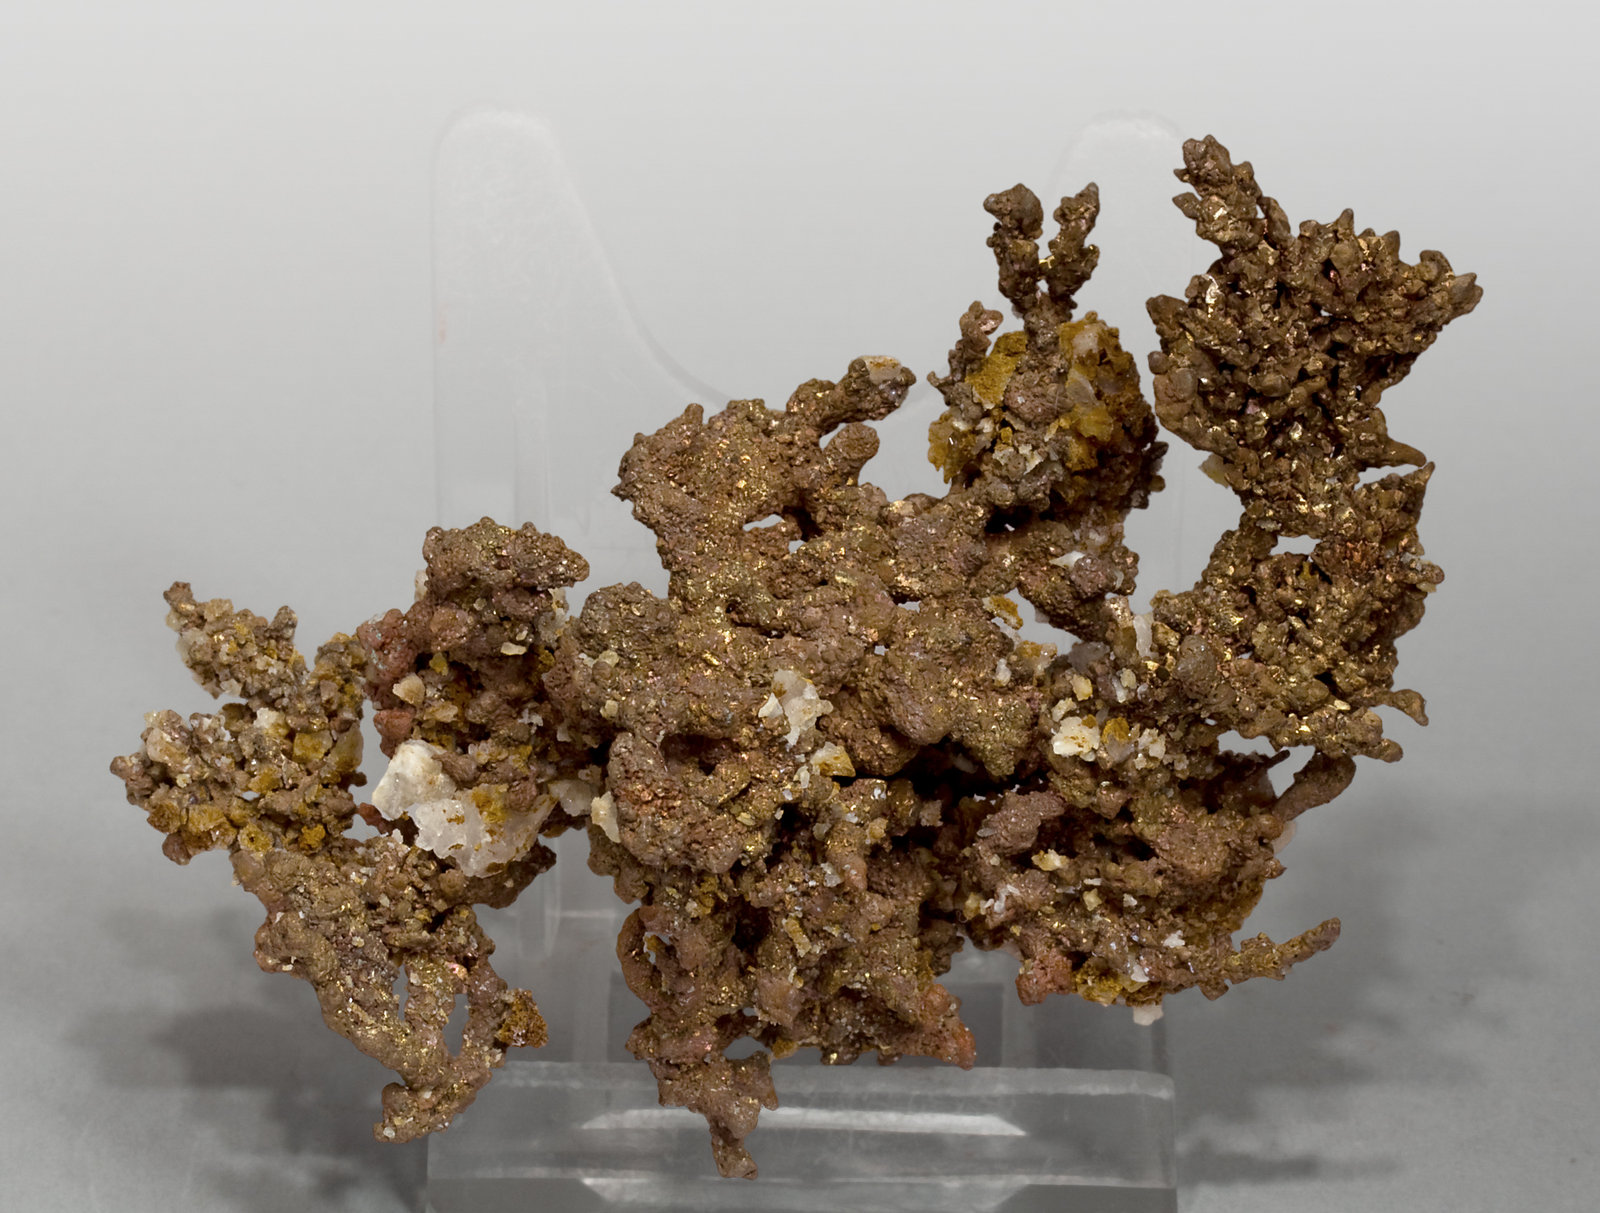 specimens/s_imagesV4/Copper-NA14V4r.jpg